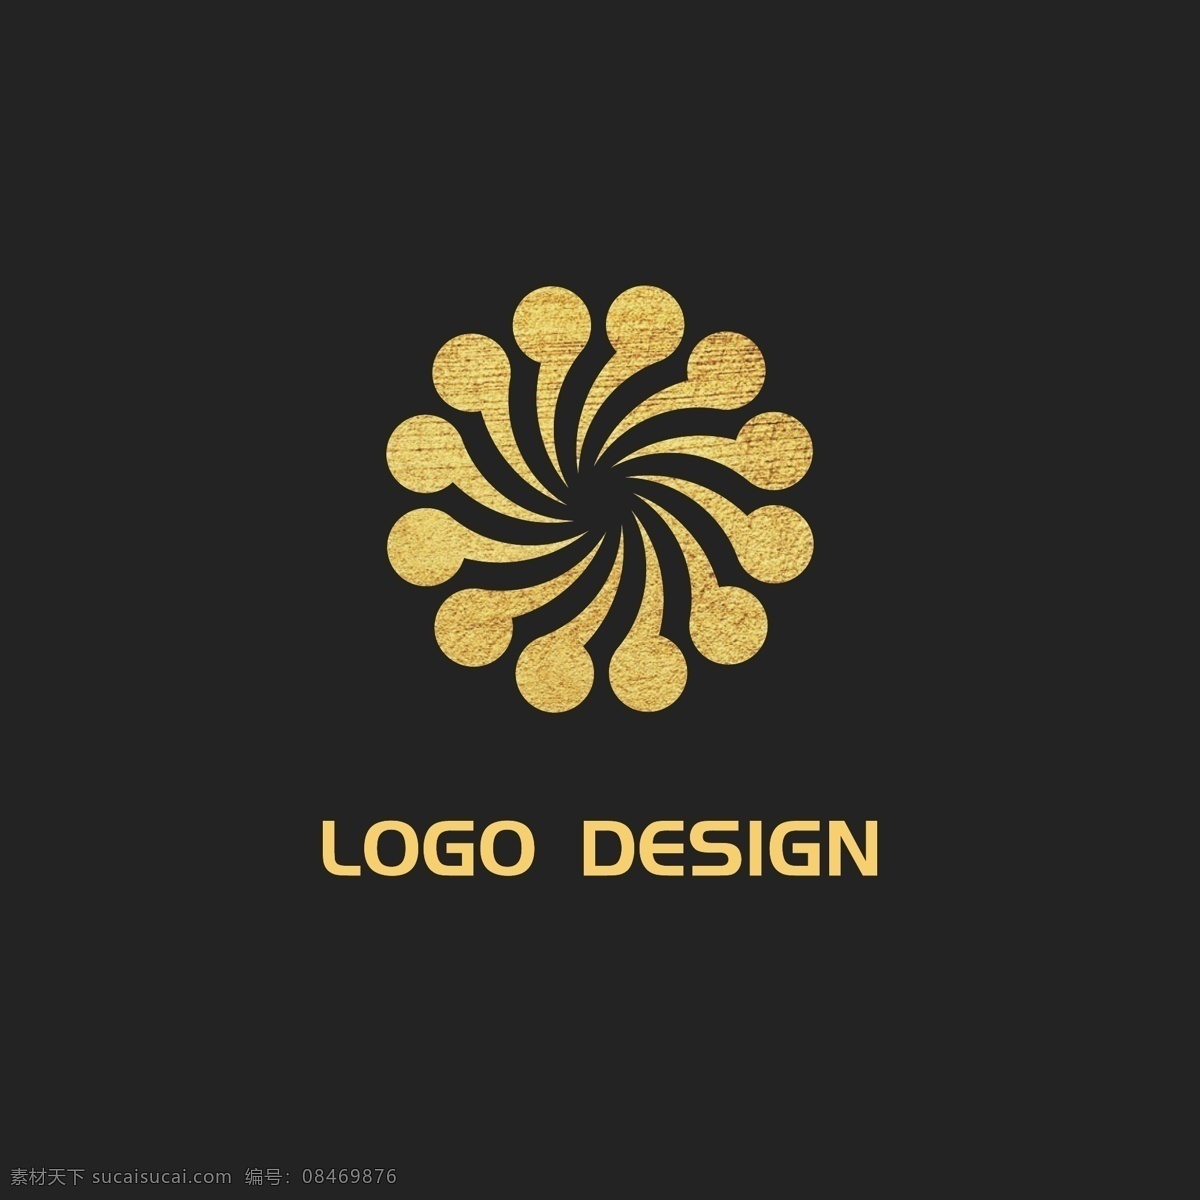 简约 logo 标志设计 企业 商业 花朵 文化 建筑 旋转